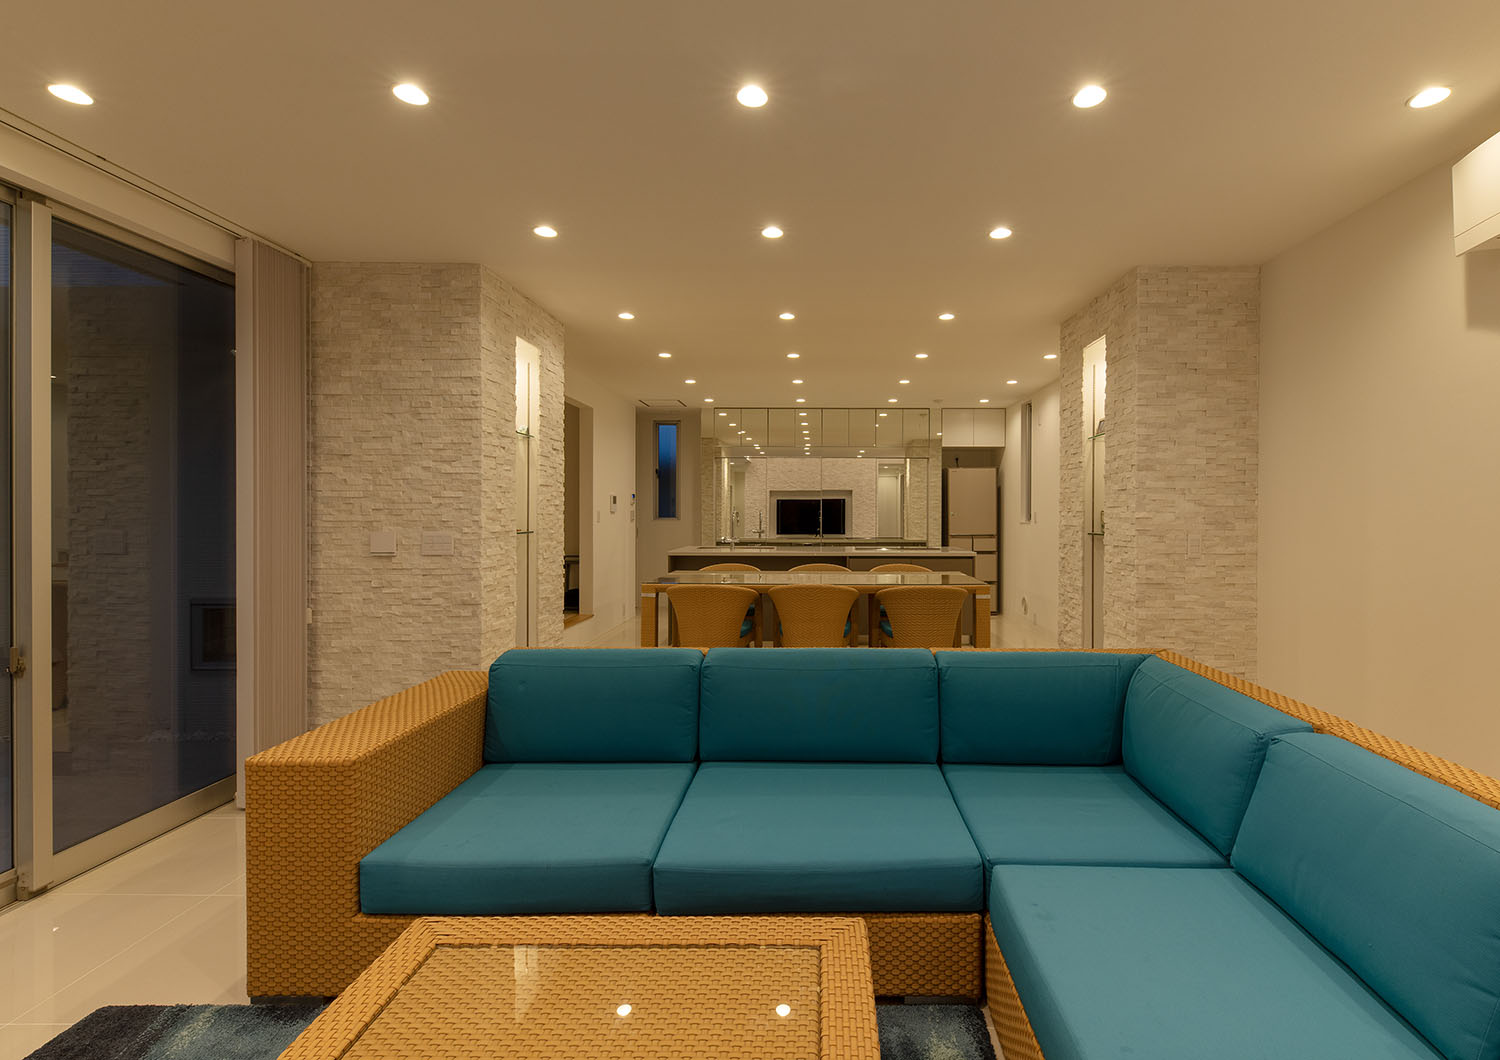 天井に均等にダウンライトが設けられた青いソファーのあるLDK・デザイン住宅